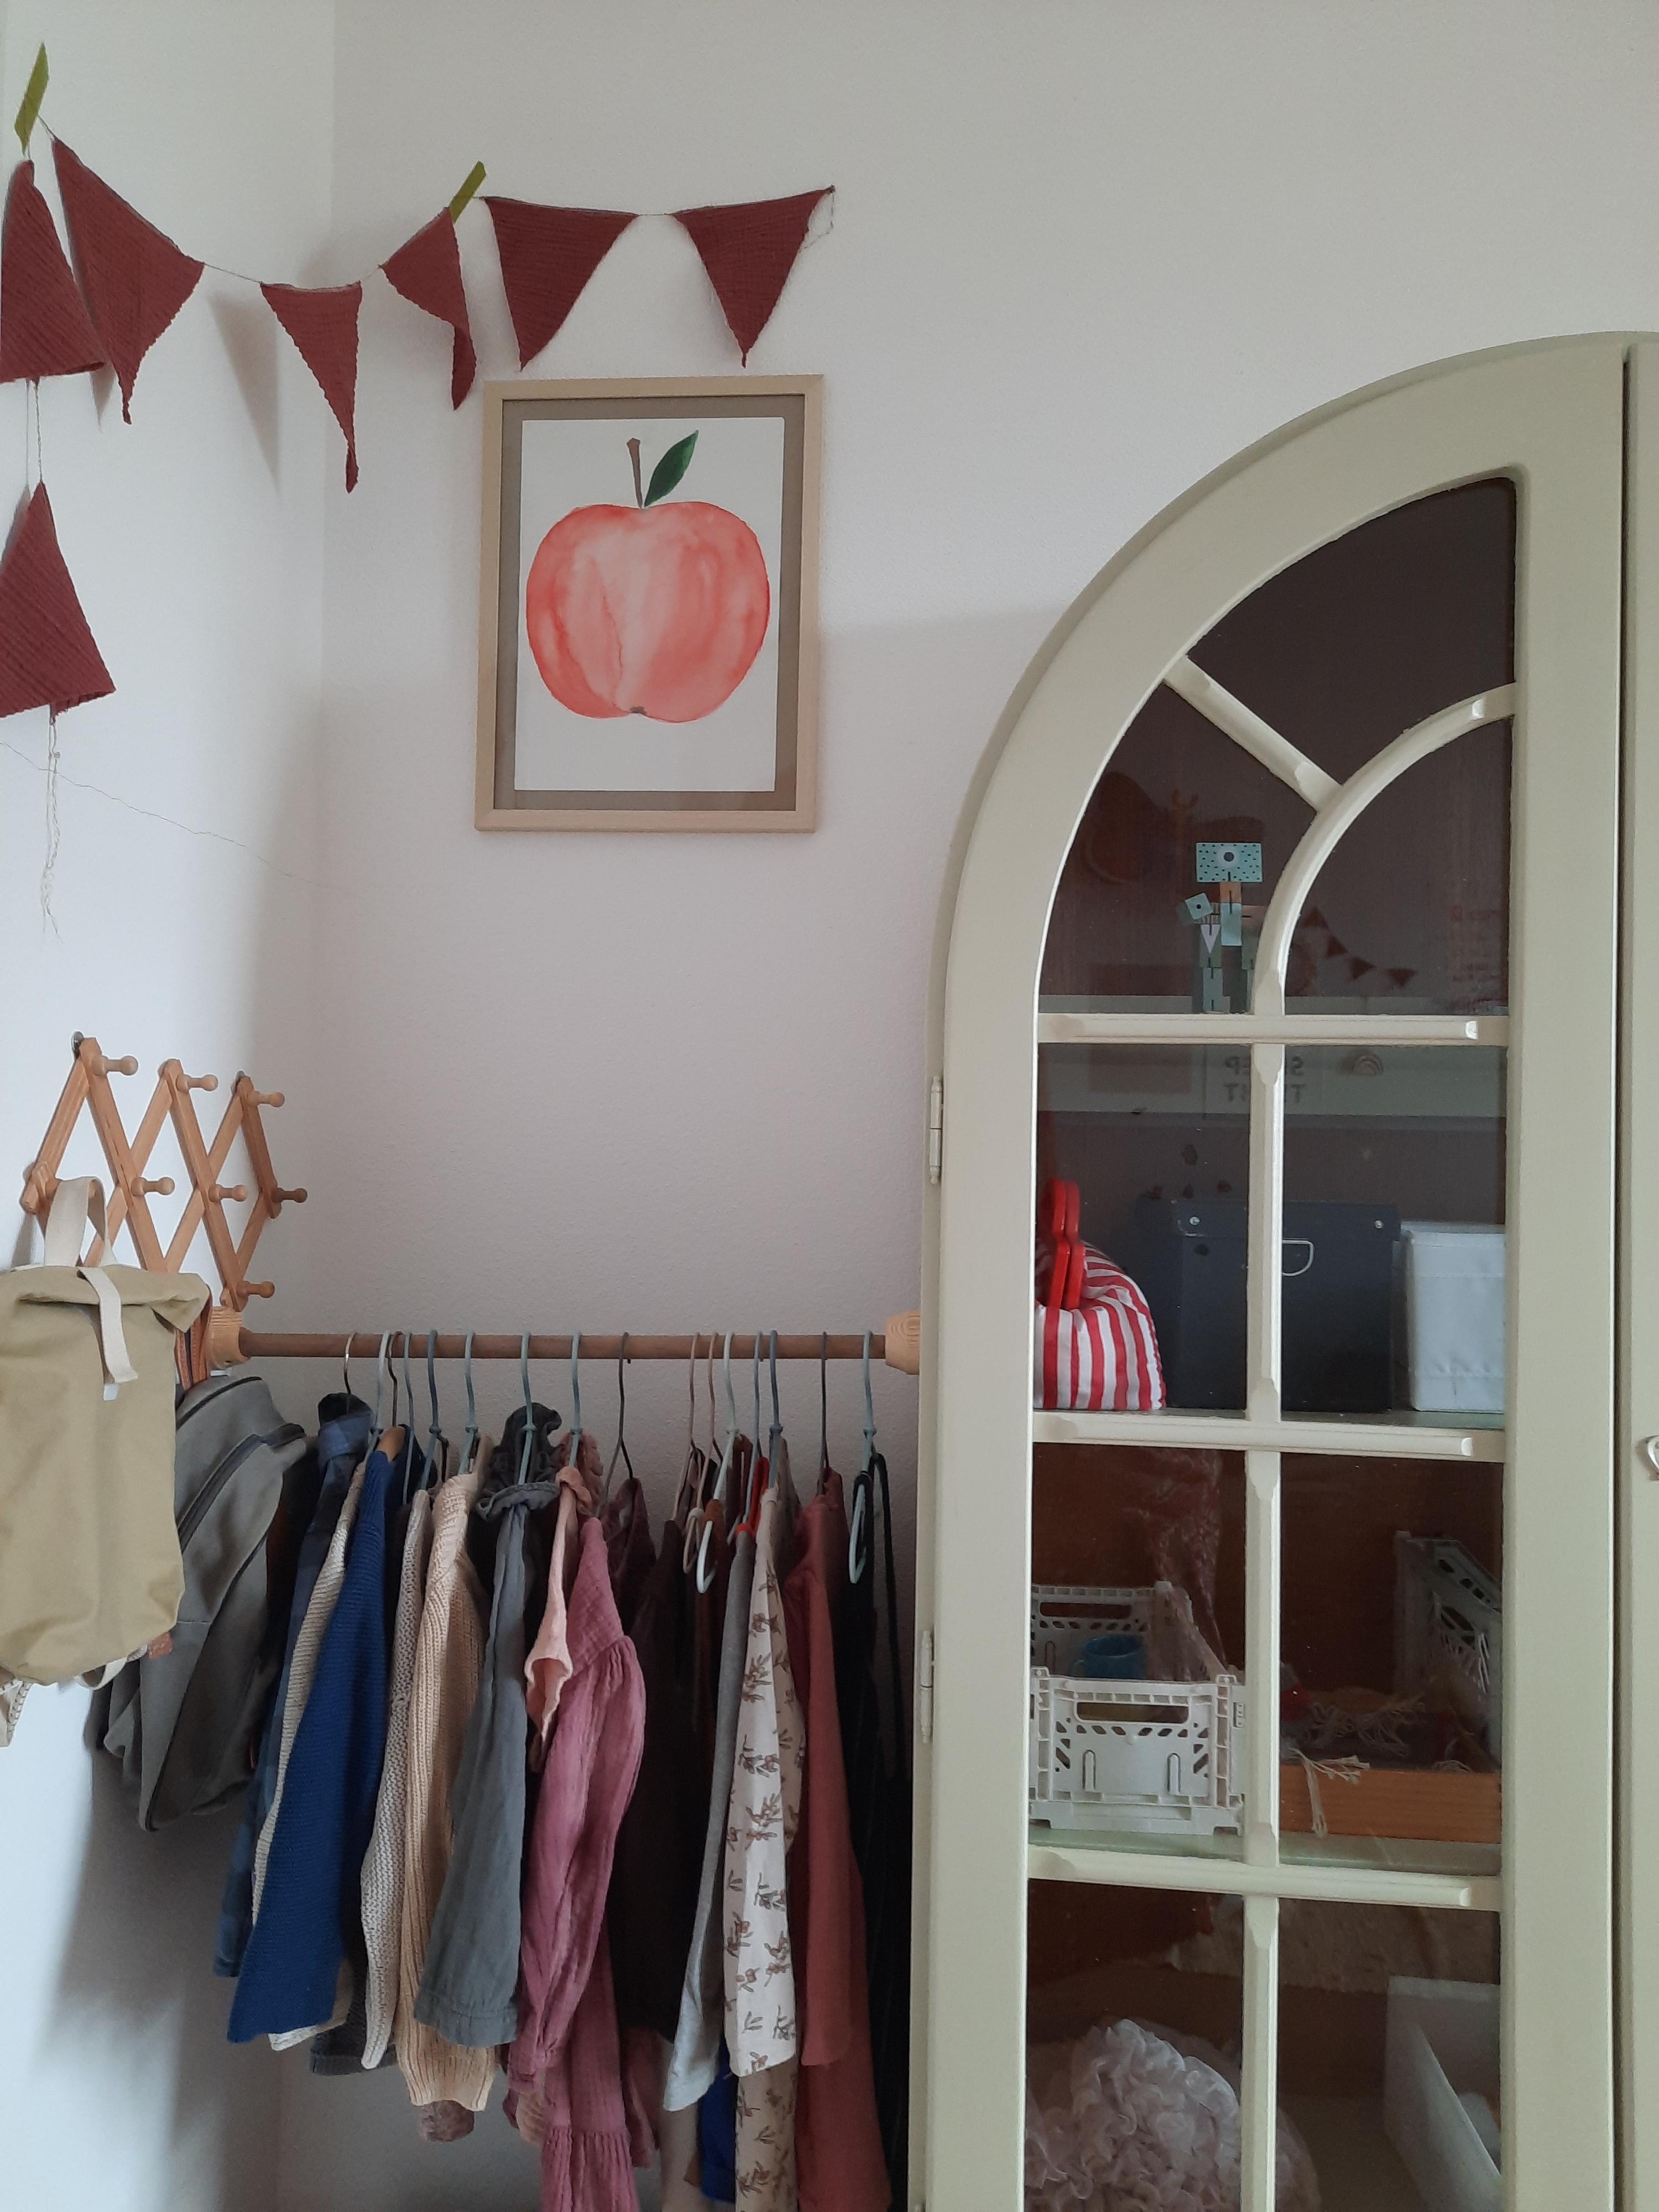 Kinderzimmer Details #kidsroom #Kinderzimmer #interior